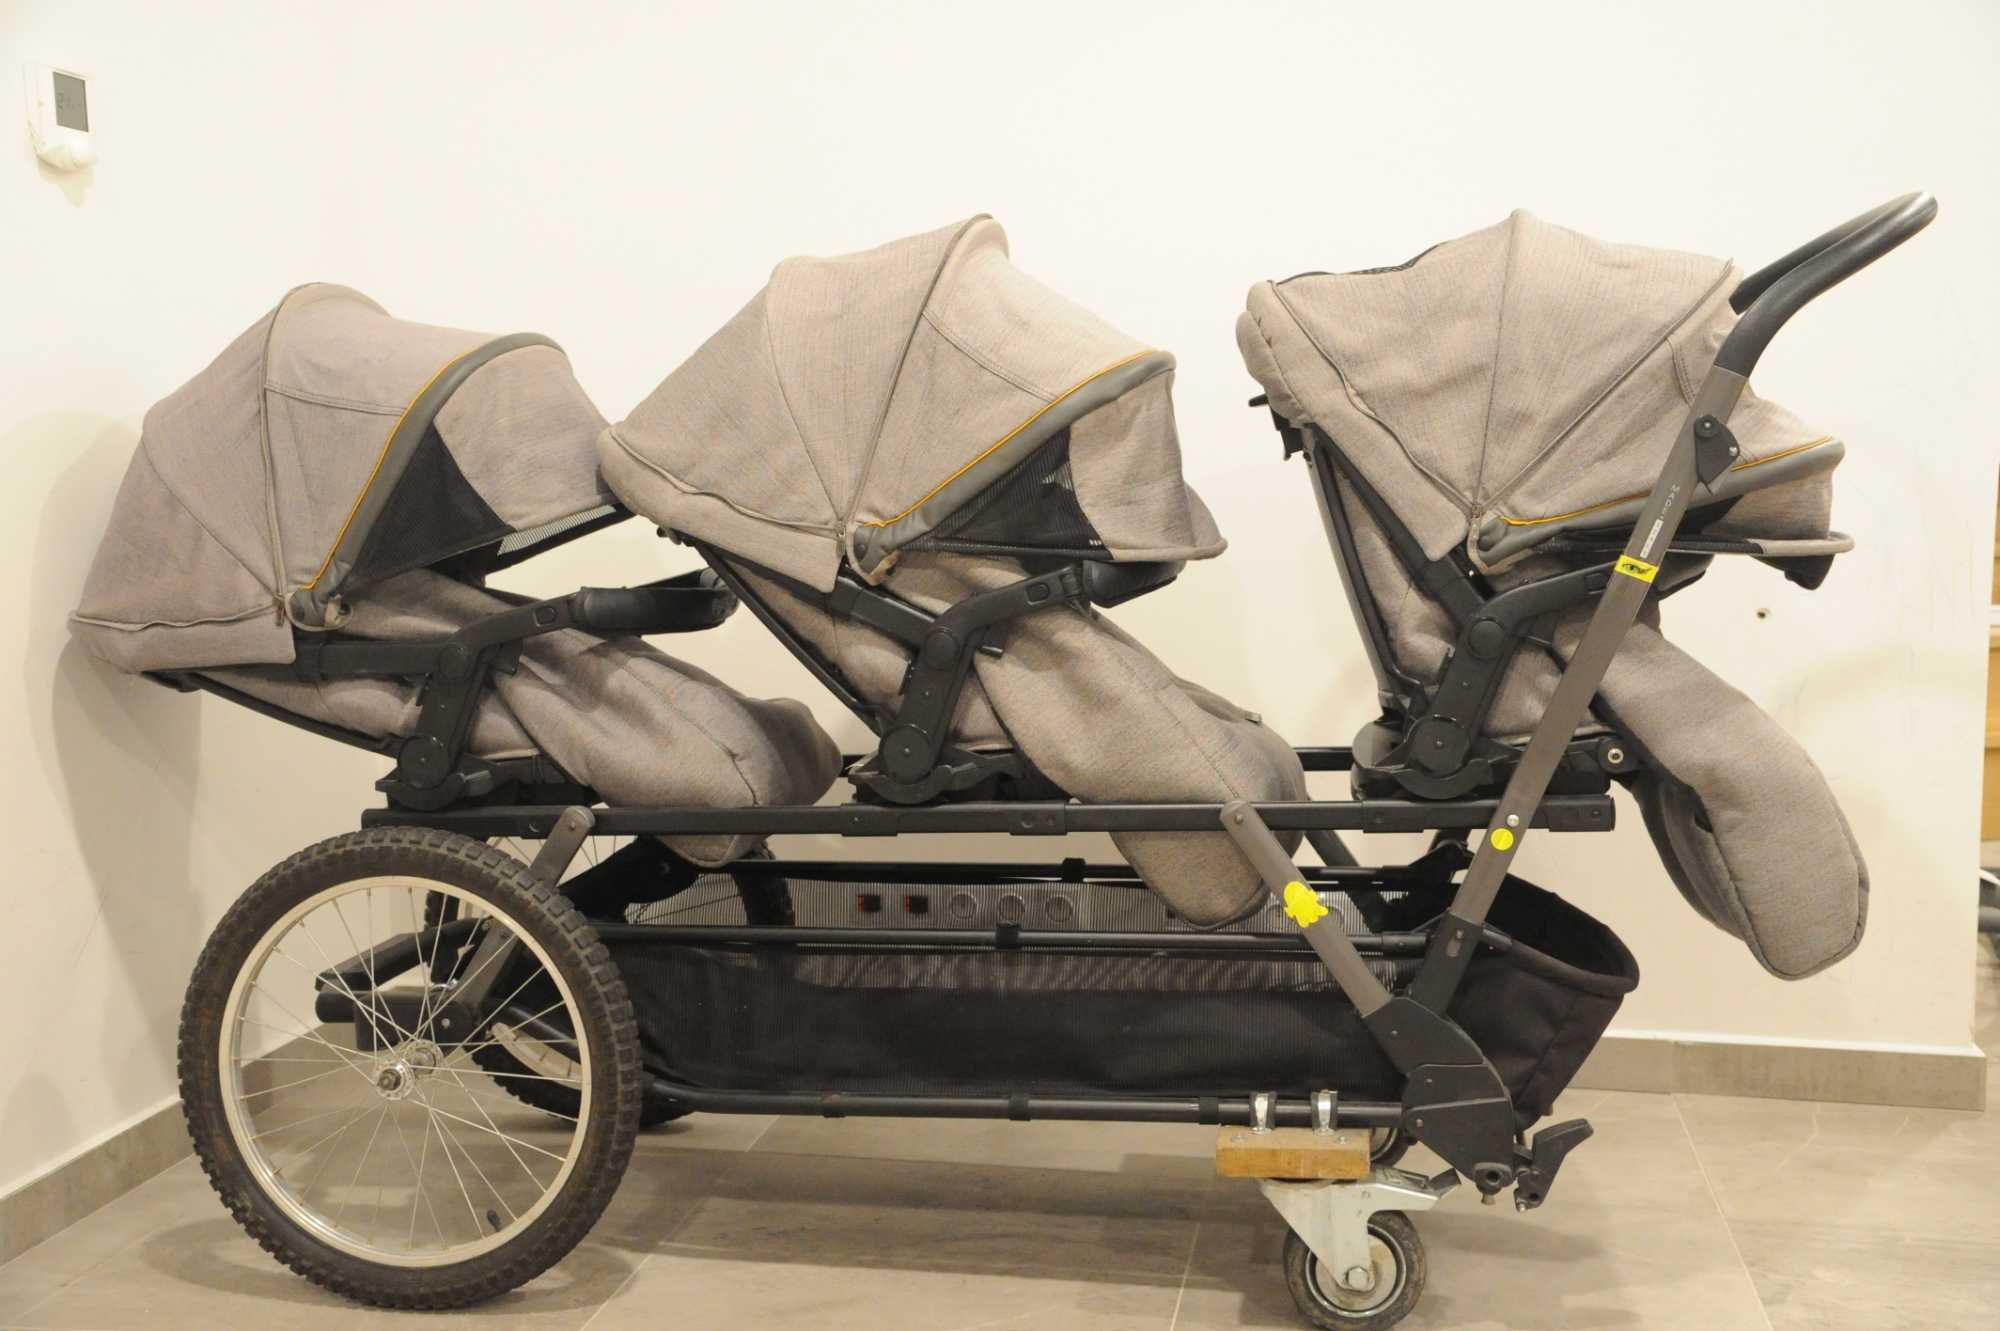 Wózek Peg Perego Triplette trojaczki dla trójki dzieci potrójny